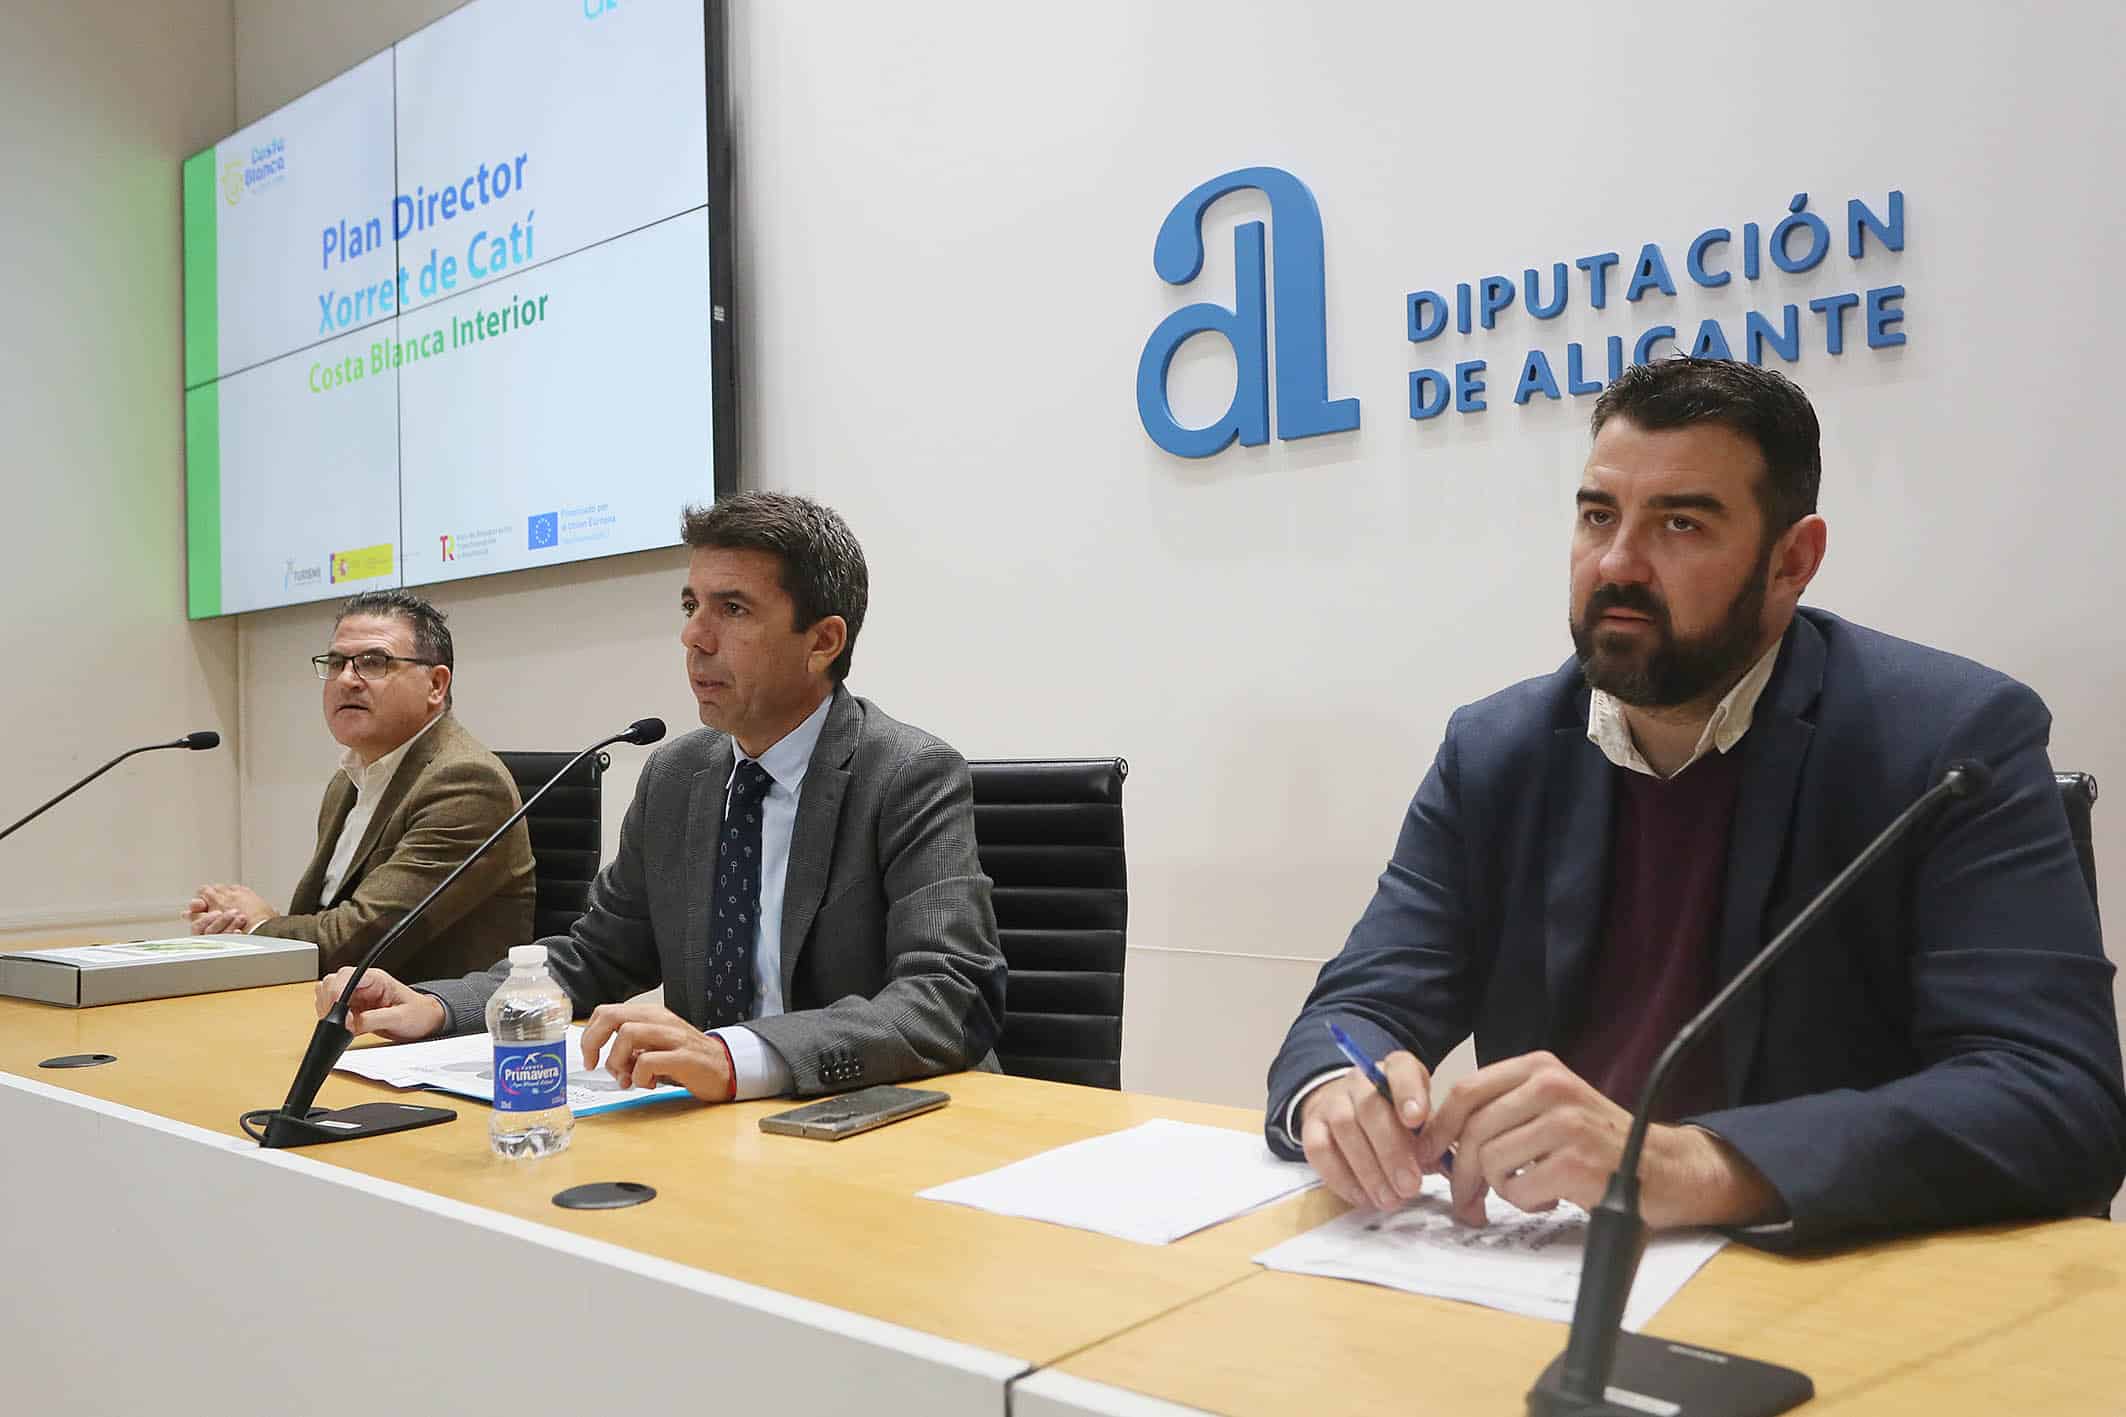 La Diputación aumenta el presupuesto  para impulsar el Plan Director de Xorret de Catí